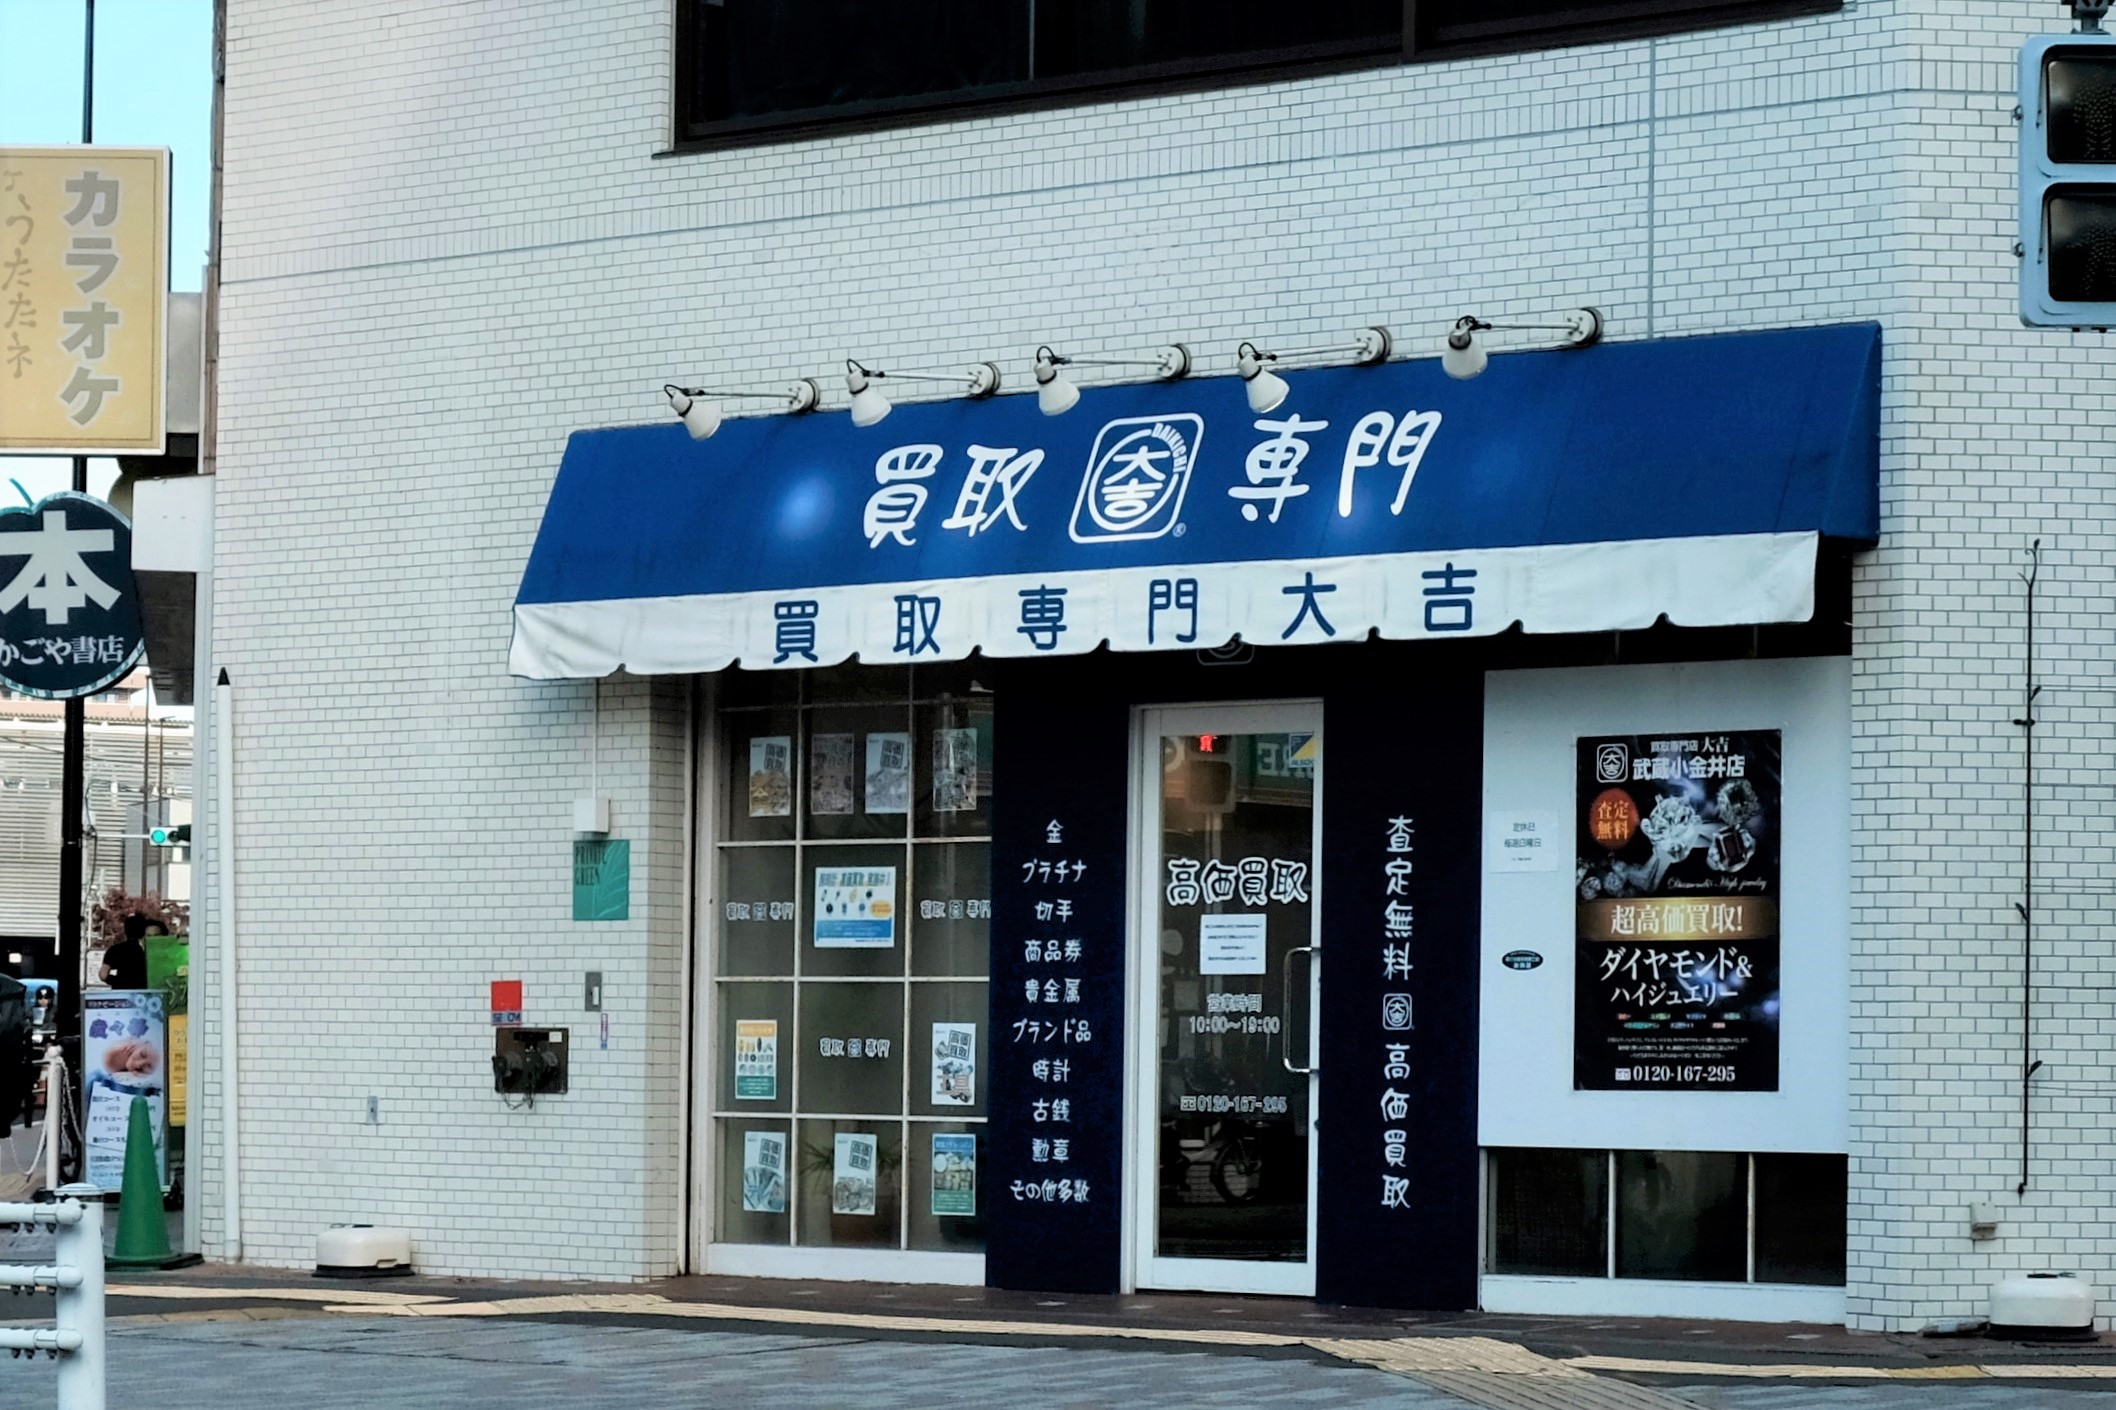 買取専門店 大吉 武蔵小金井店 | 小金井市商工会